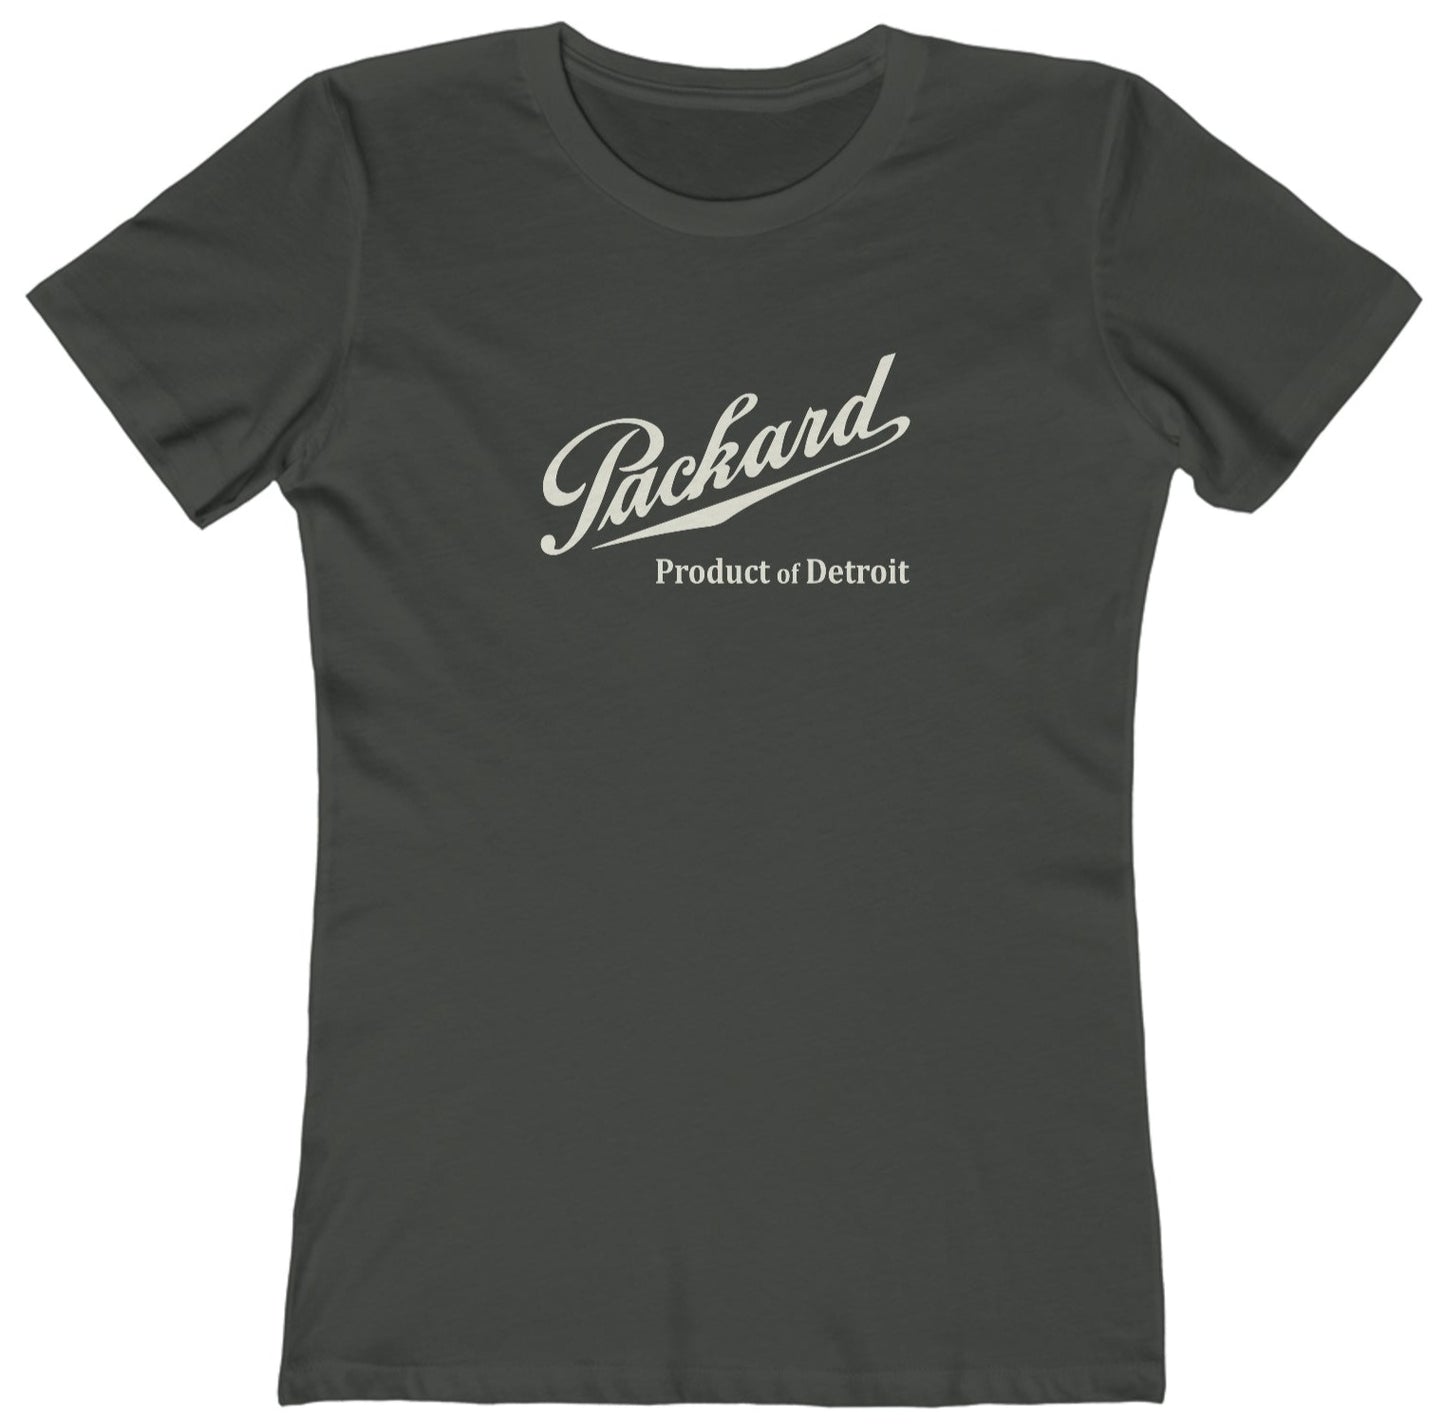 Packard Detroit t shirt